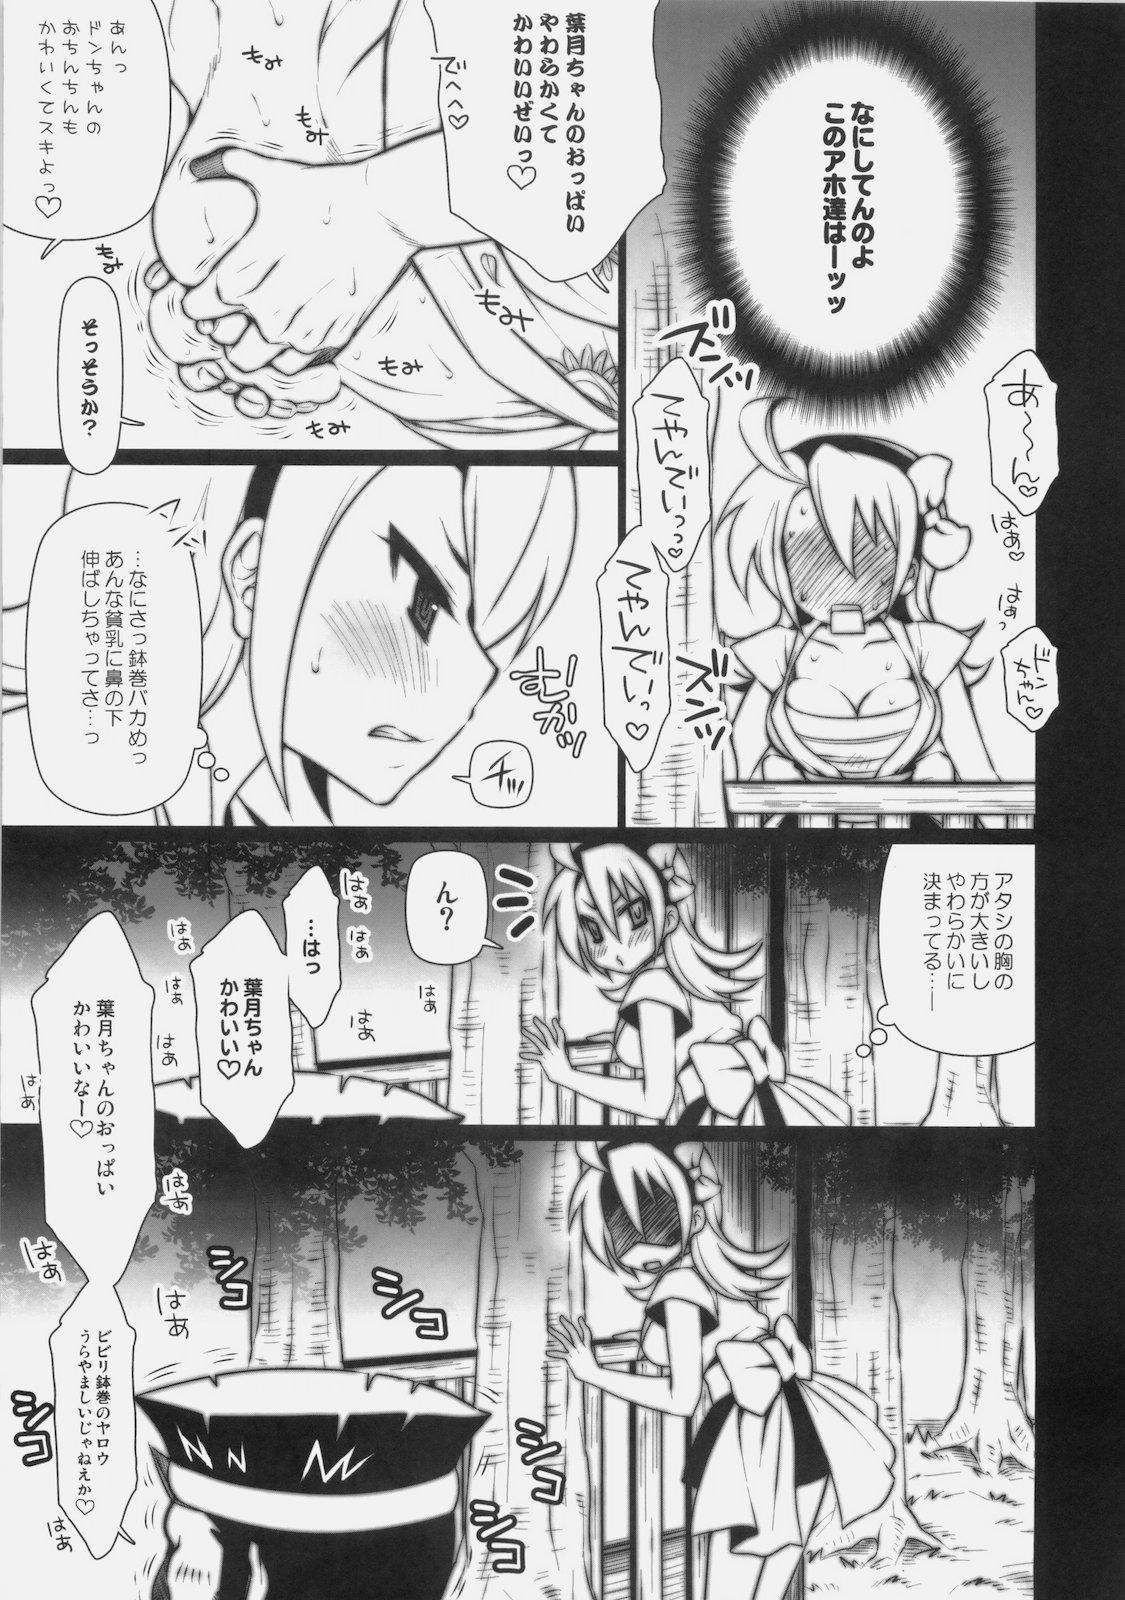 Fist Matsuri no Yoru ni - Ao don hanabi no kiwami Smalltits - Page 4